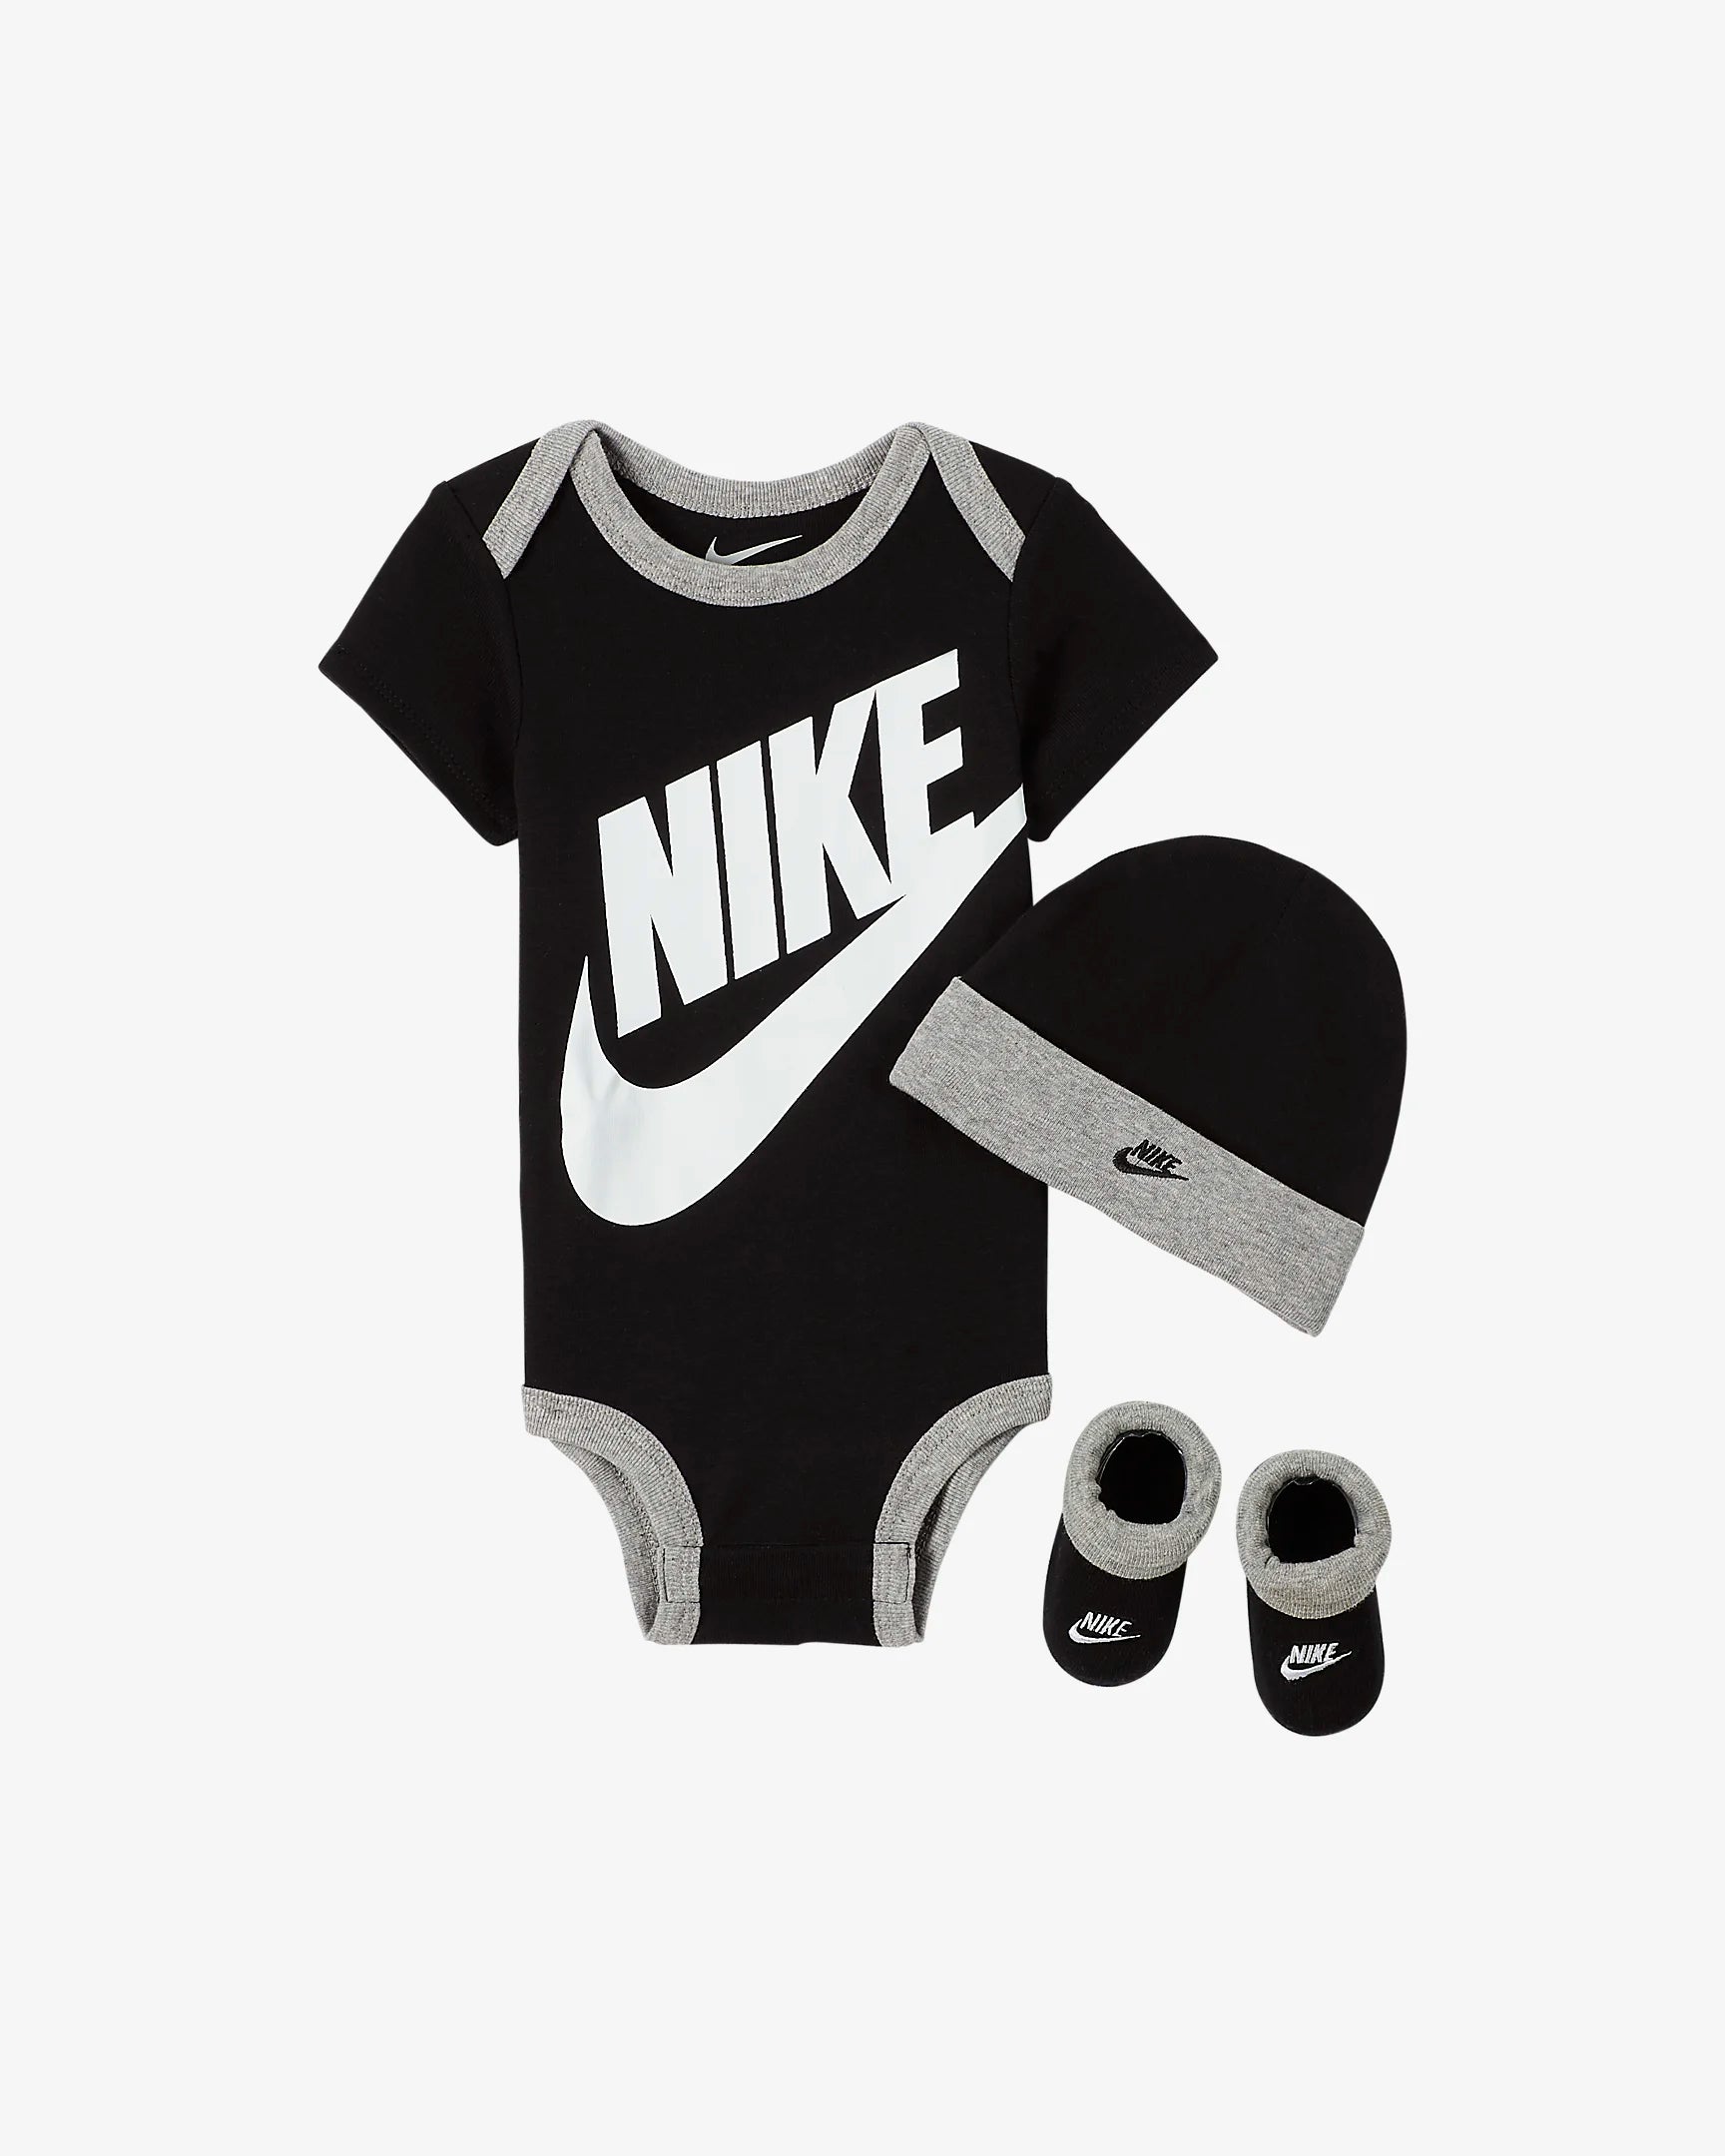 Completo Nike da bambino - Bianco/Nero/Grigio